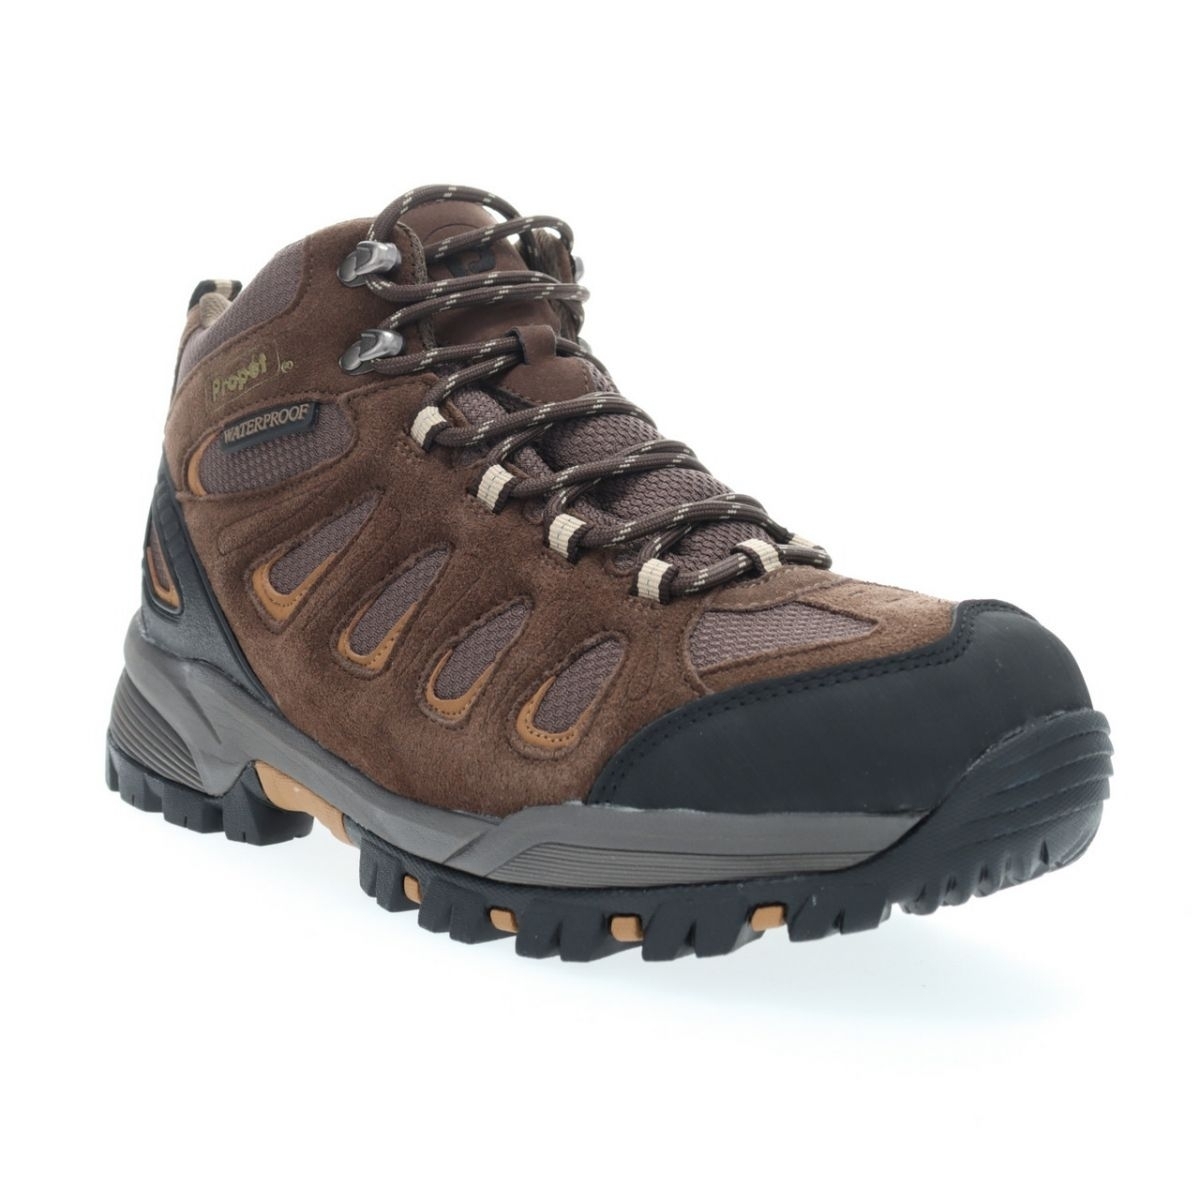 Propet Men's Ridge Walker Hiking Boot Brown - M3599BR 8 XX US Men BROWN - BROWN, 8 XX-Wide